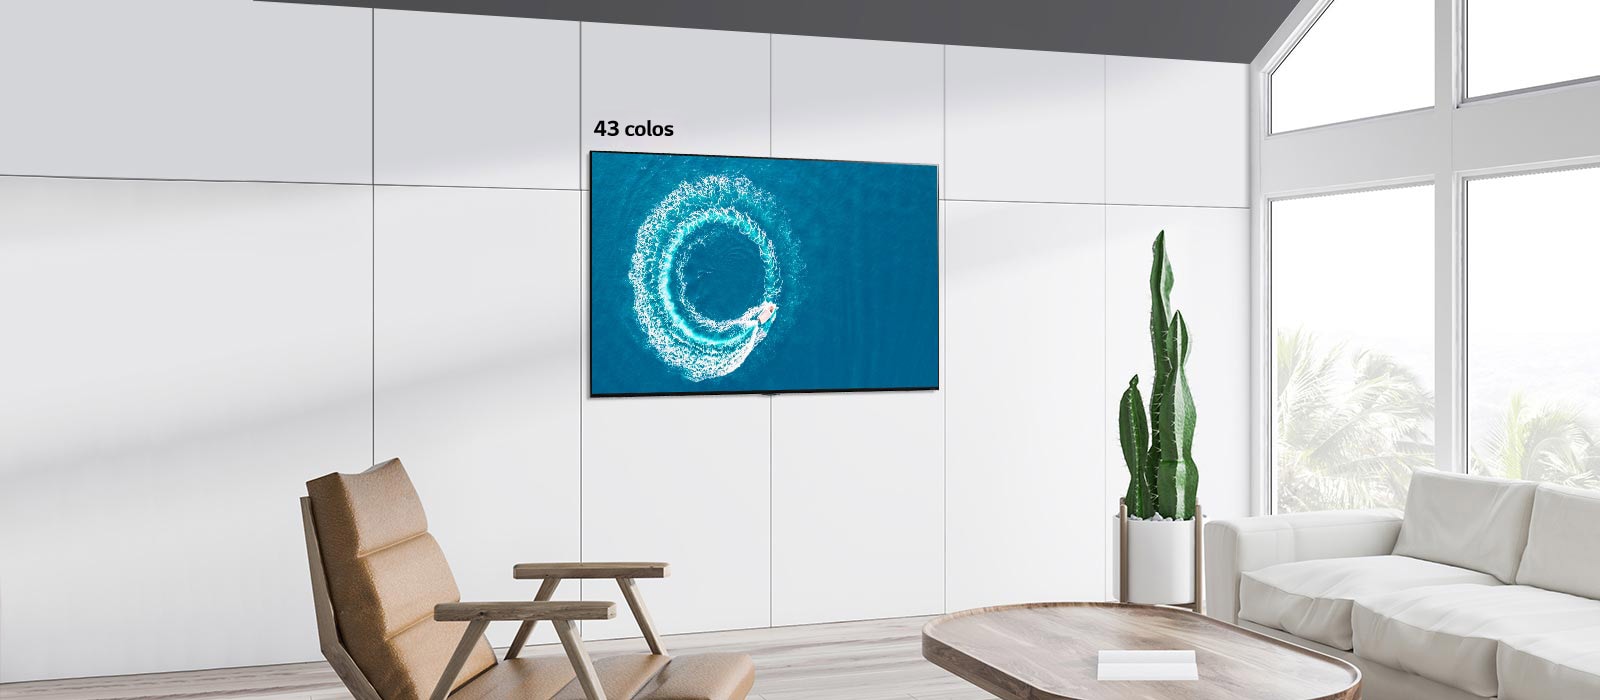 Egy falra rögzített LG QNED MiniLED TV egy modern, fehér belső térben. Balra-jobbra görgetve látható a 43 colos és 86 colos képernyő mérete közötti különbség.